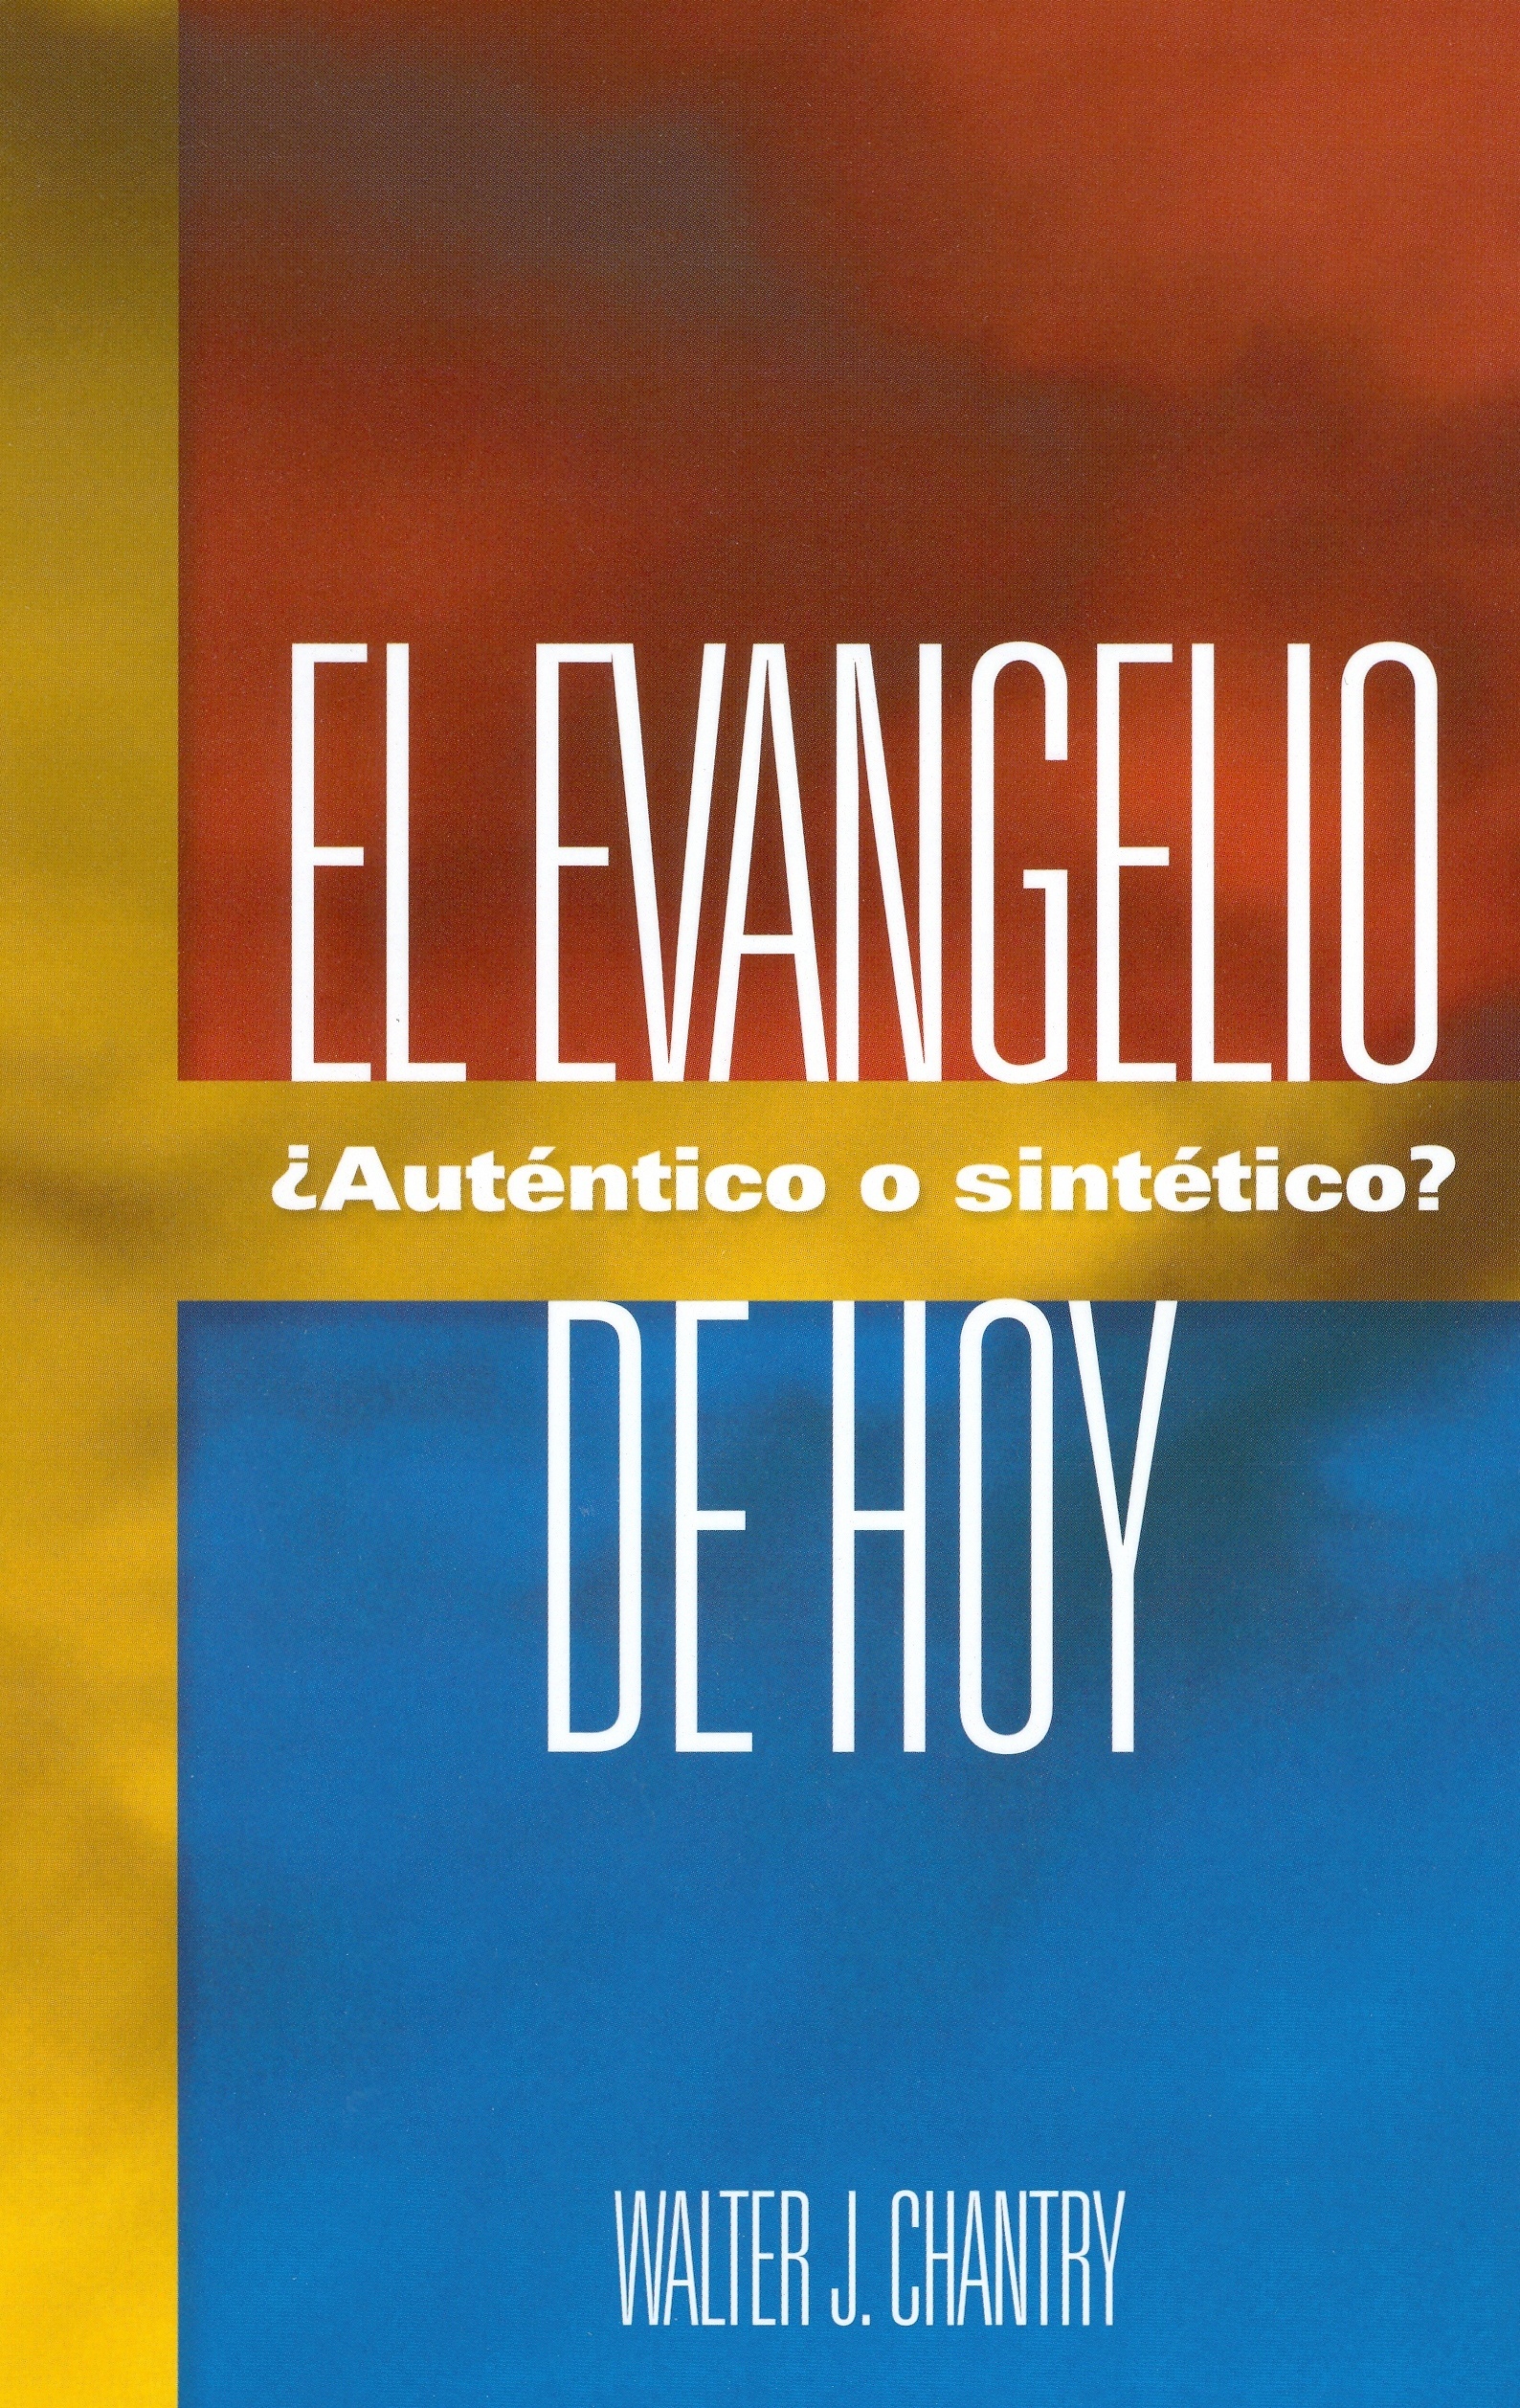 Book Cover For 'Evangelio De Hoy'